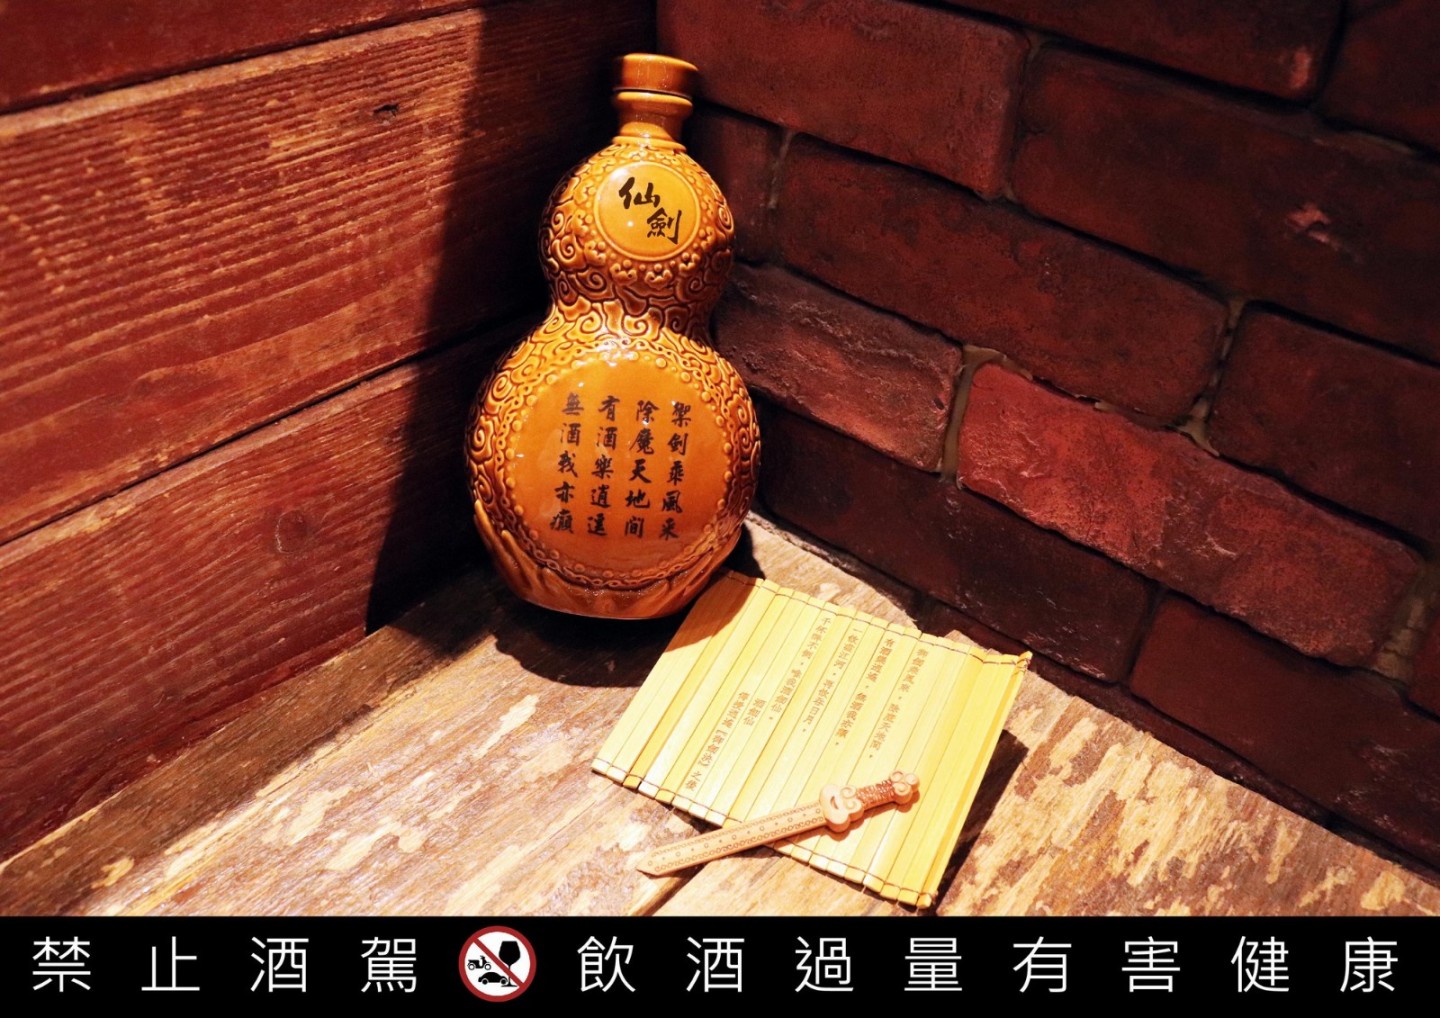 《仙剑奇侠传》推限量版"葫芦"造型纪念酒  8月31日开始预购-第6张